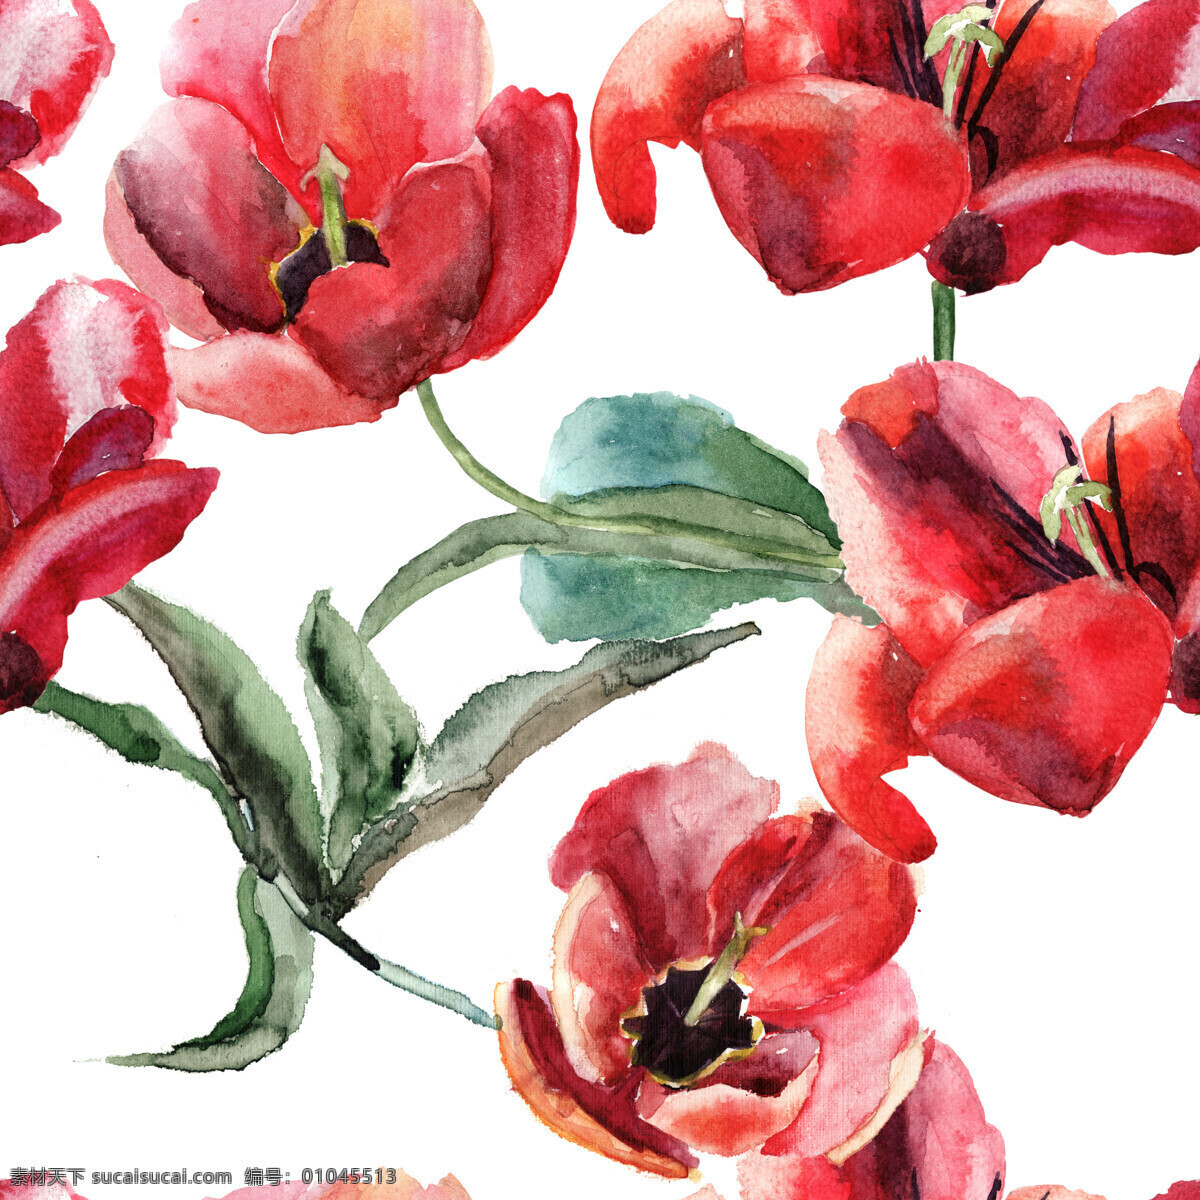 盛开 红色 罂粟花 水彩画 背景 素材图片 盛开的花朵 红色罂粟花 植物 花卉 背景素材 花草树木 生物世界